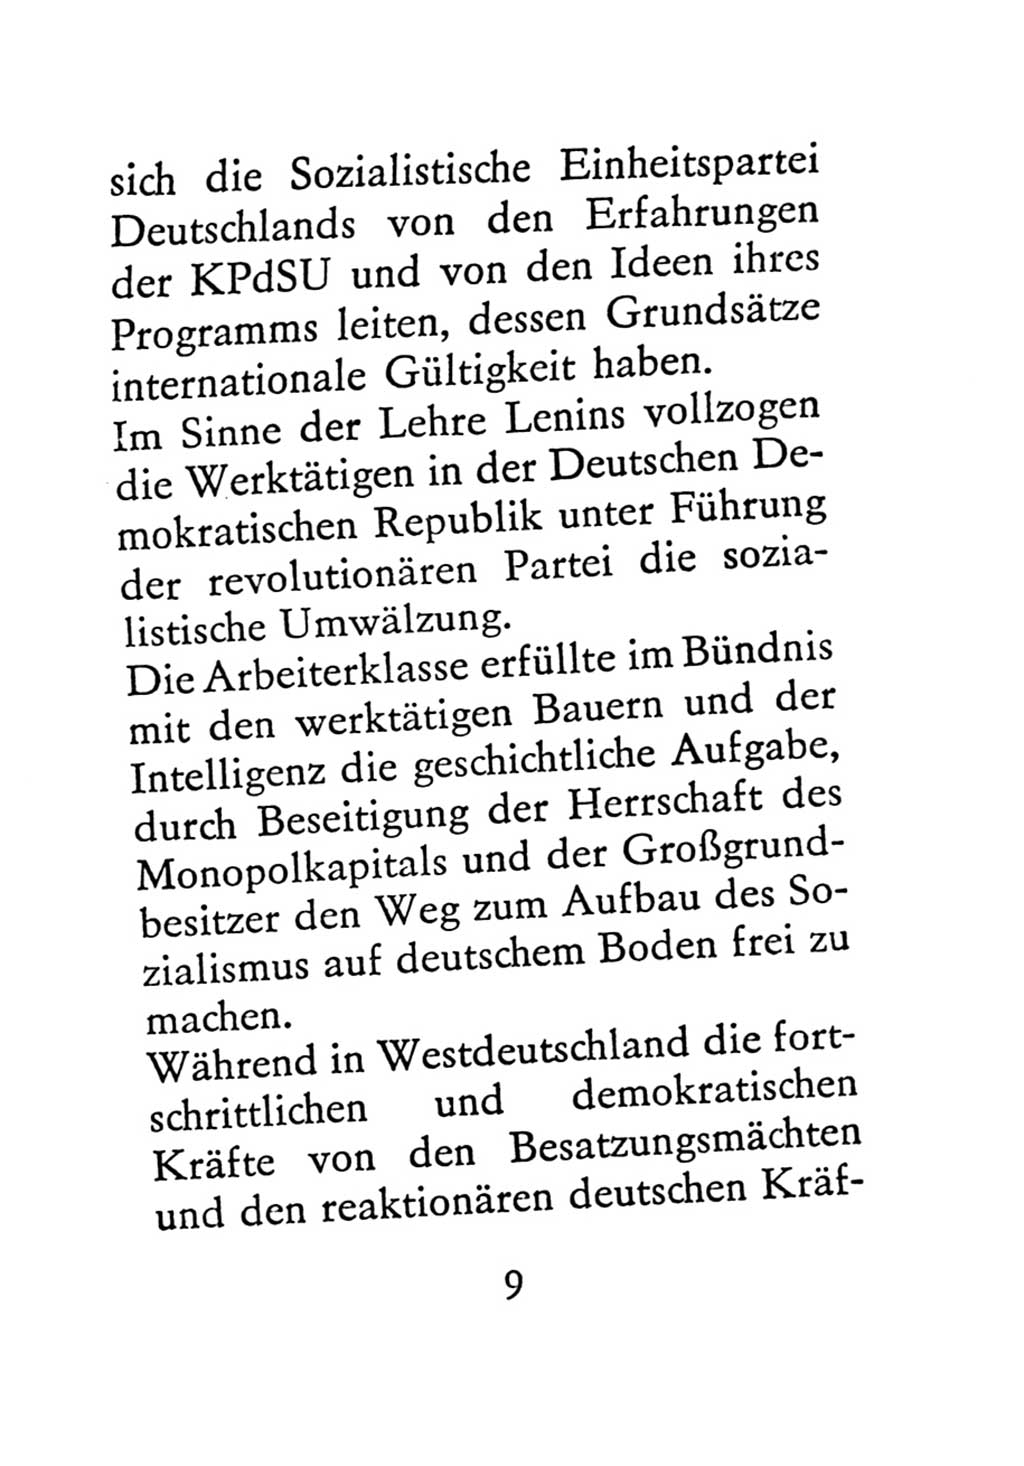 Statut der Sozialistischen Einheitspartei Deutschlands (SED) 1971, Seite 9 (St. SED DDR 1971, S. 9)